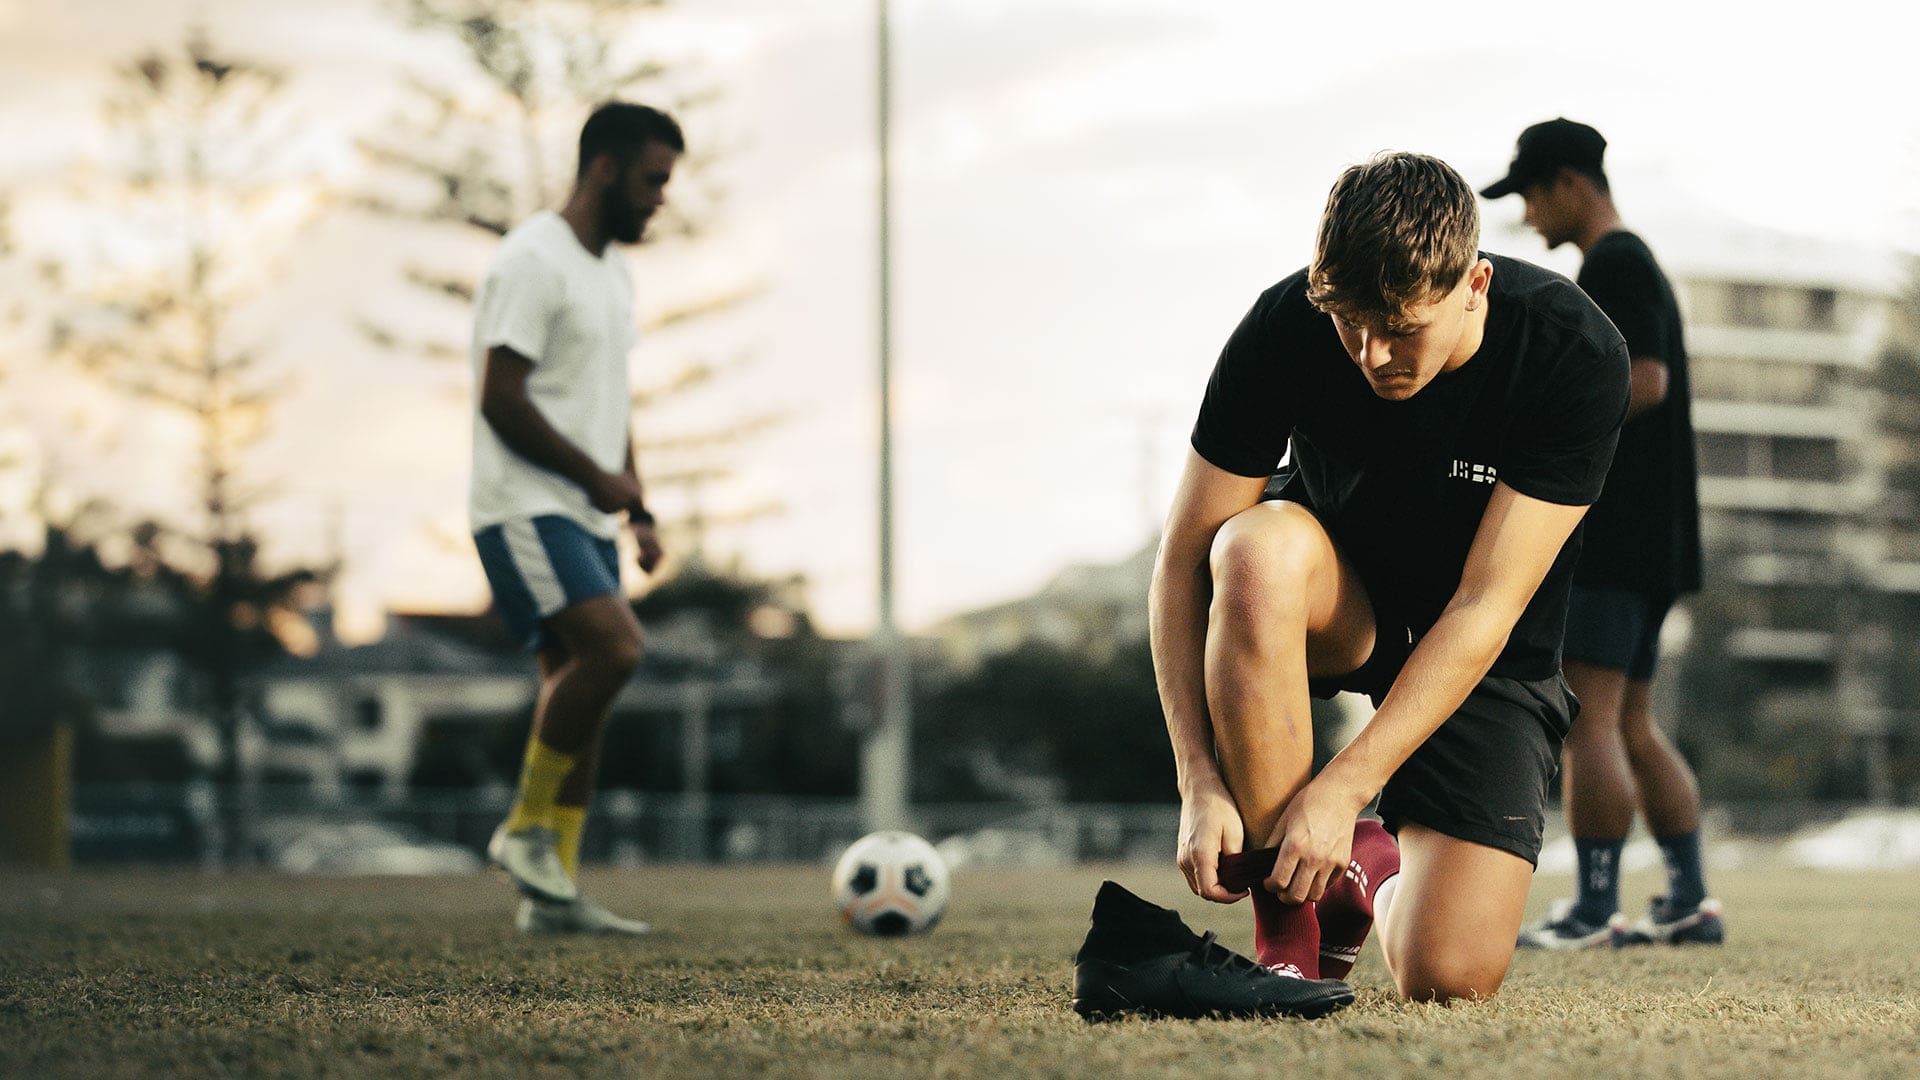 Men kicking soccer ball in Grip Star Socks